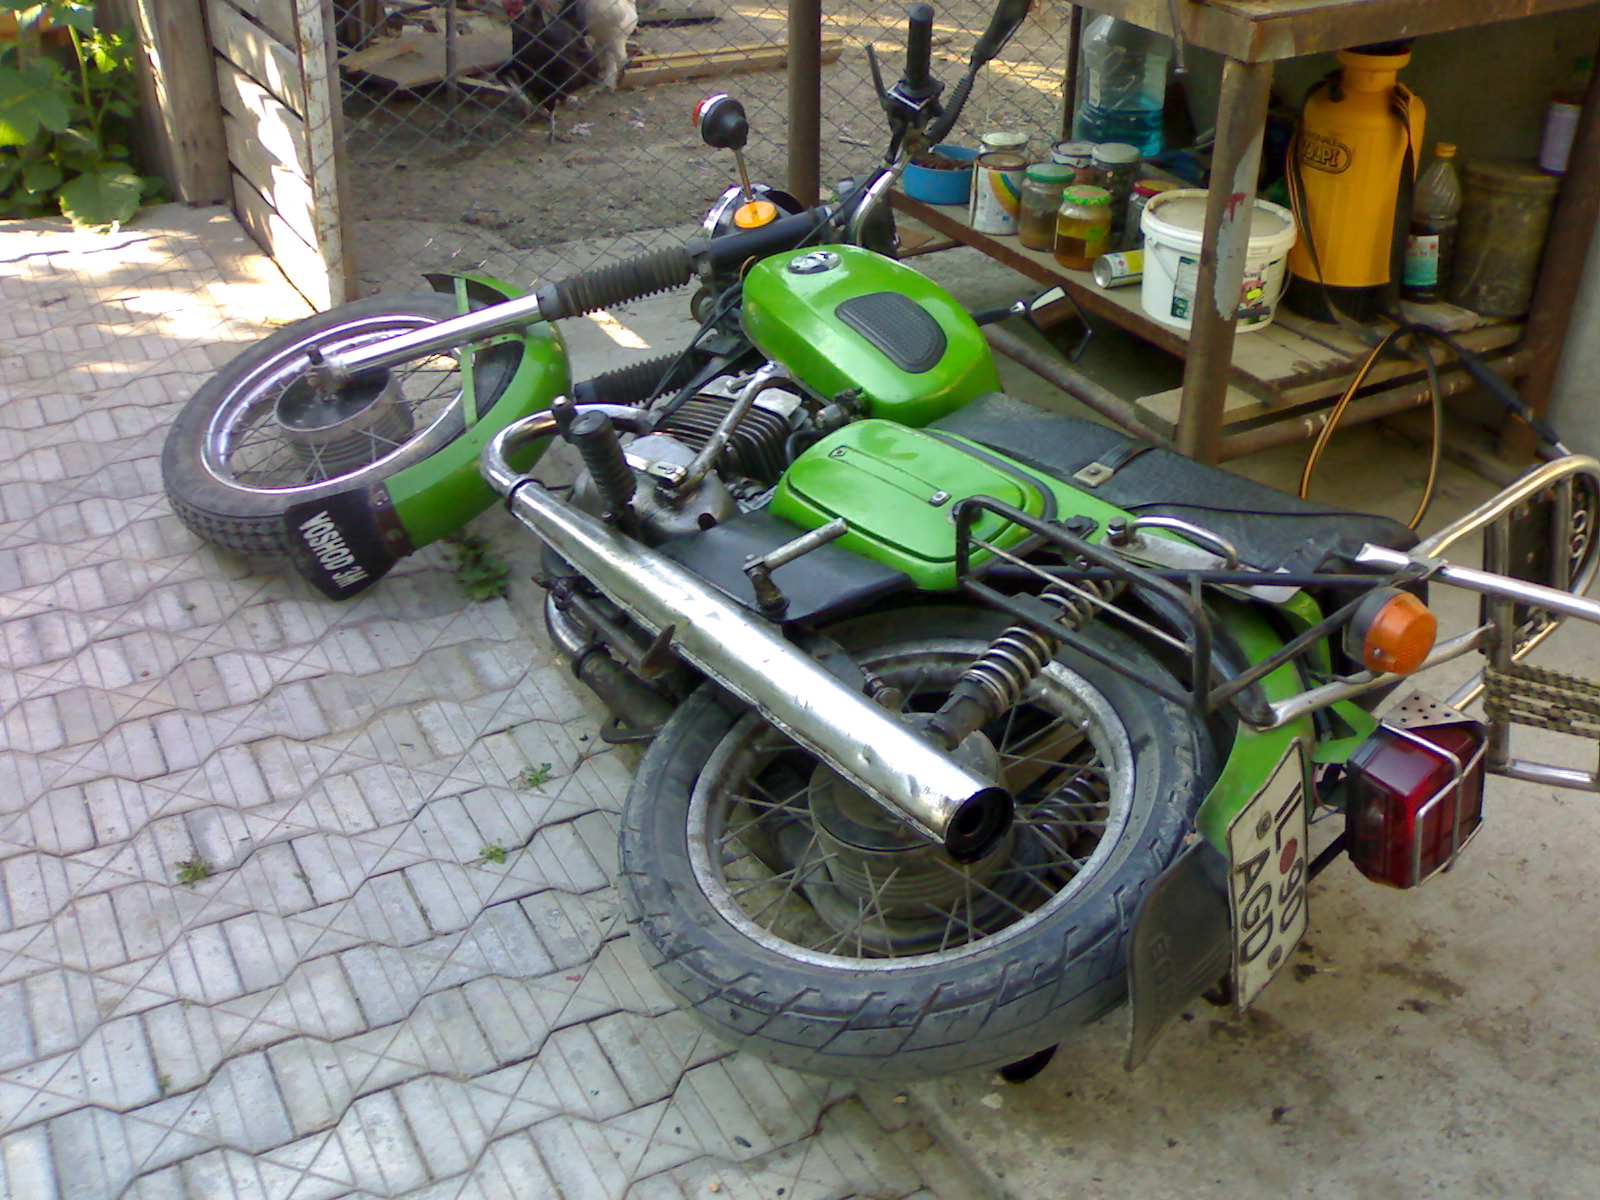 Motoarele Lui Fanes - Motocicleta mea - MOTOCICLISM.ro